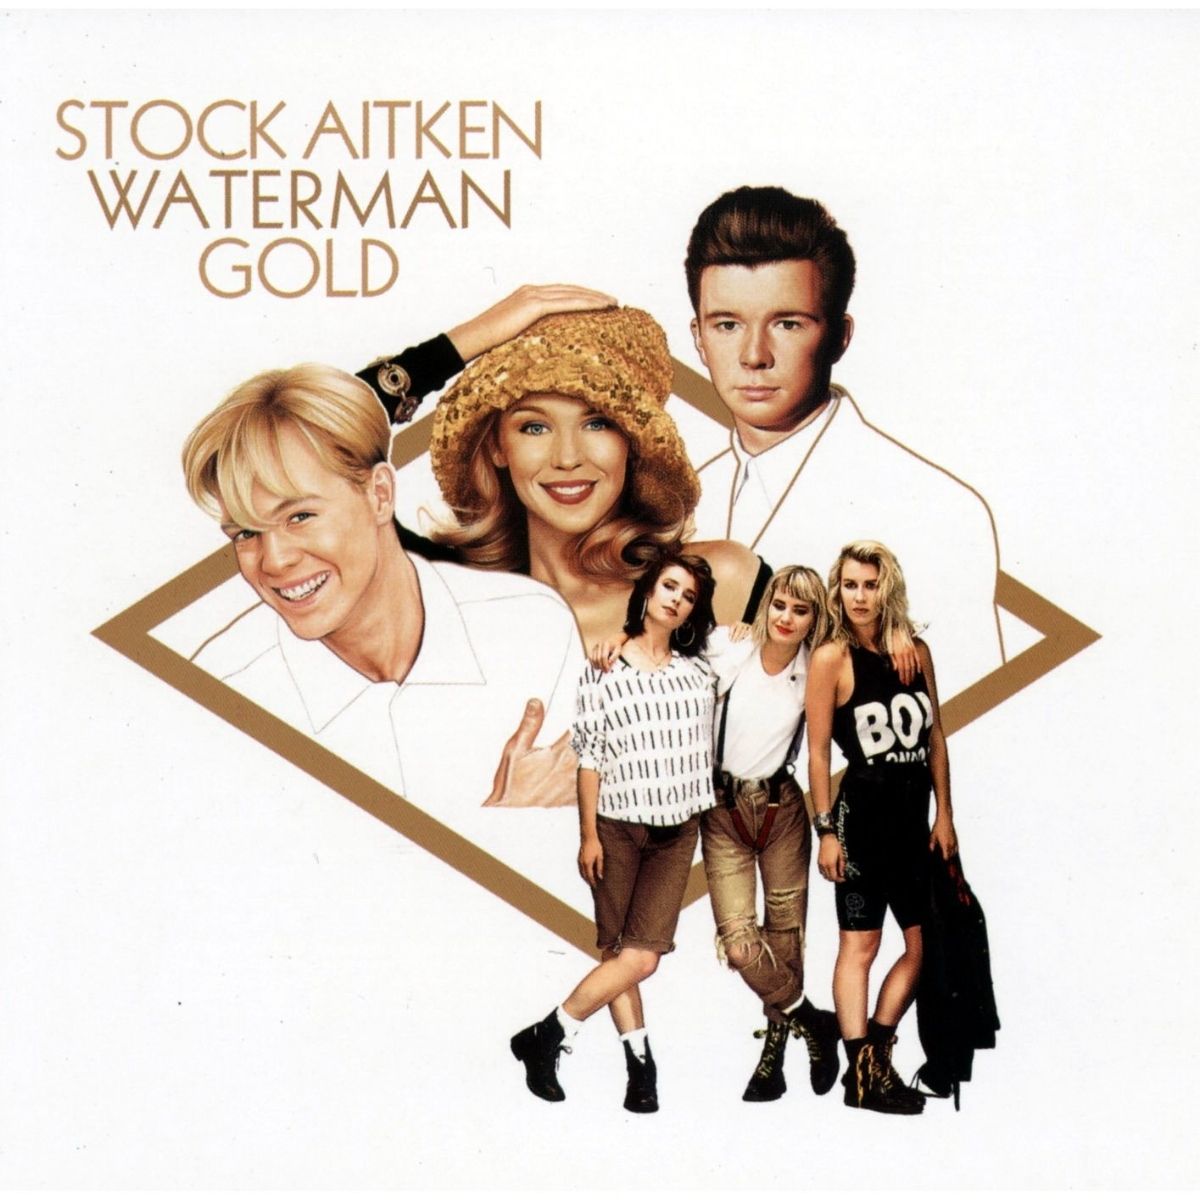 Пластинка «Stock, Aitken, Waterman Gold» с лучшими хитами продюсеров